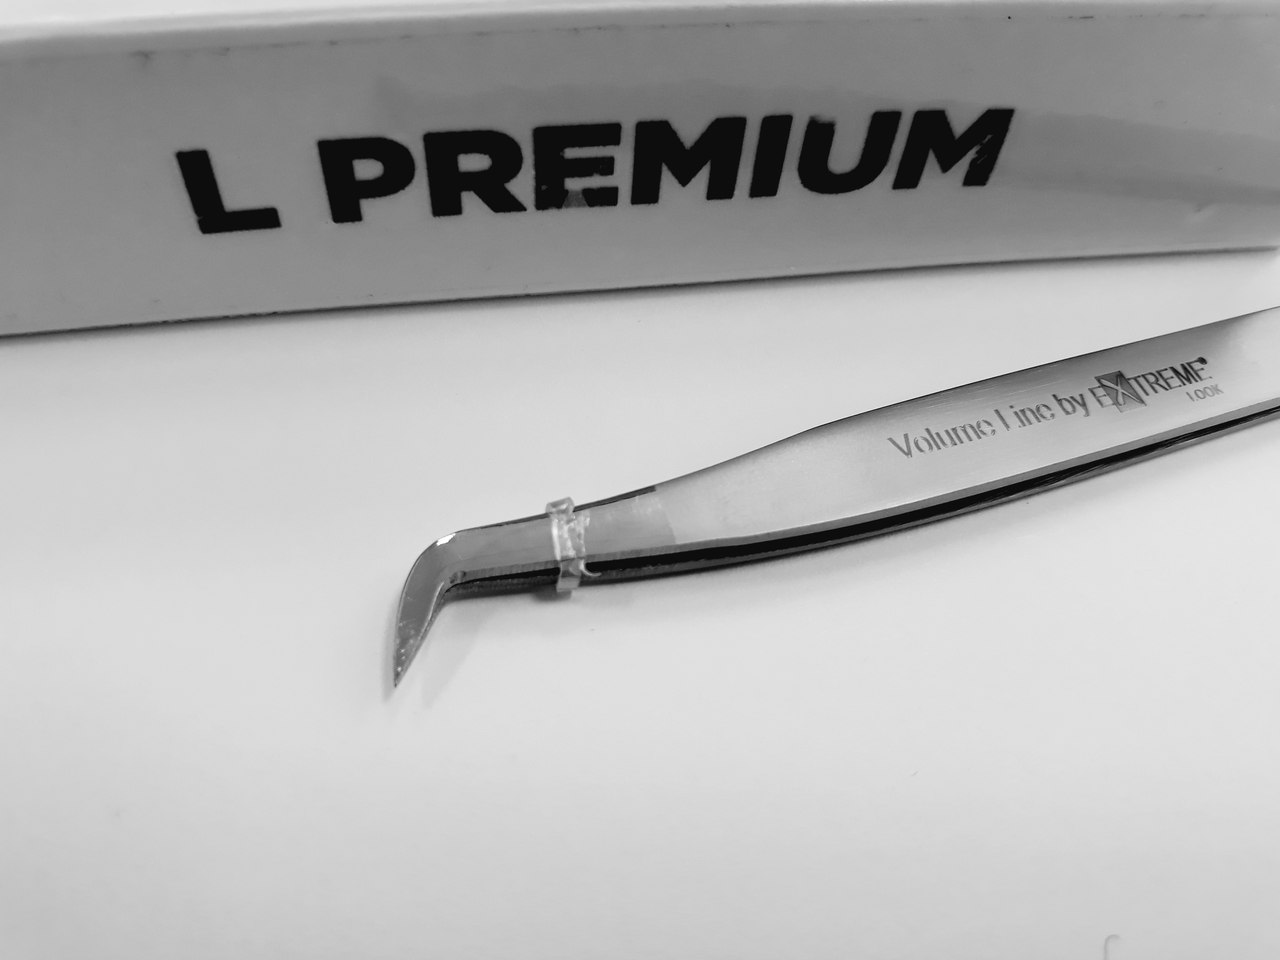 Пинцет Extreme Look "L" Premium